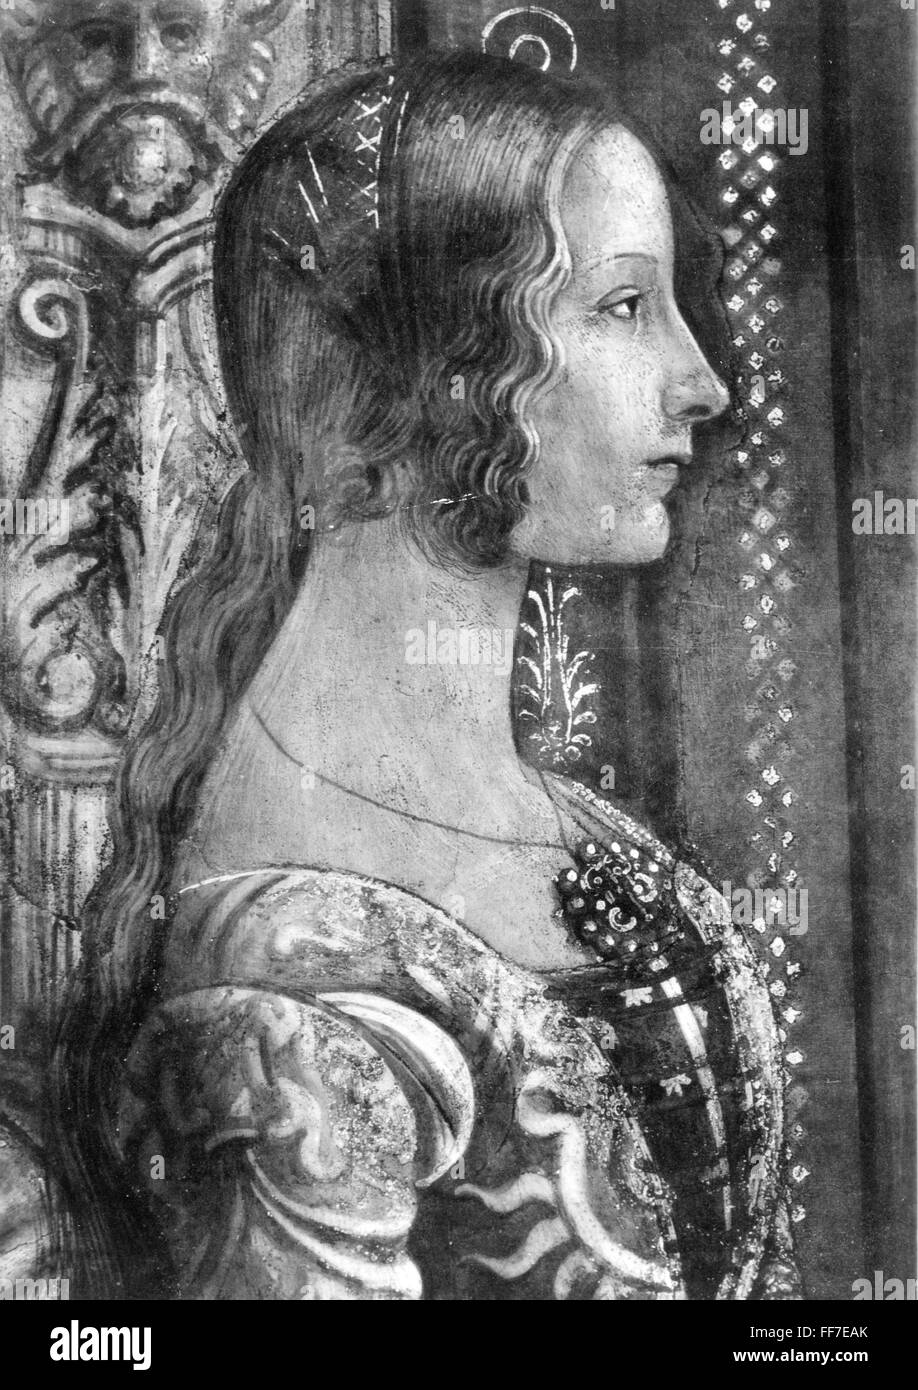 Moyen âge, gens, style de cheveux d'une jeune femme, peinture par Domenico Ghirlandaio (1449 - 1494), 'Ludovica Tornabuoni', détail, 15ème siècle, droits additionnels-Clearences-non disponible Banque D'Images